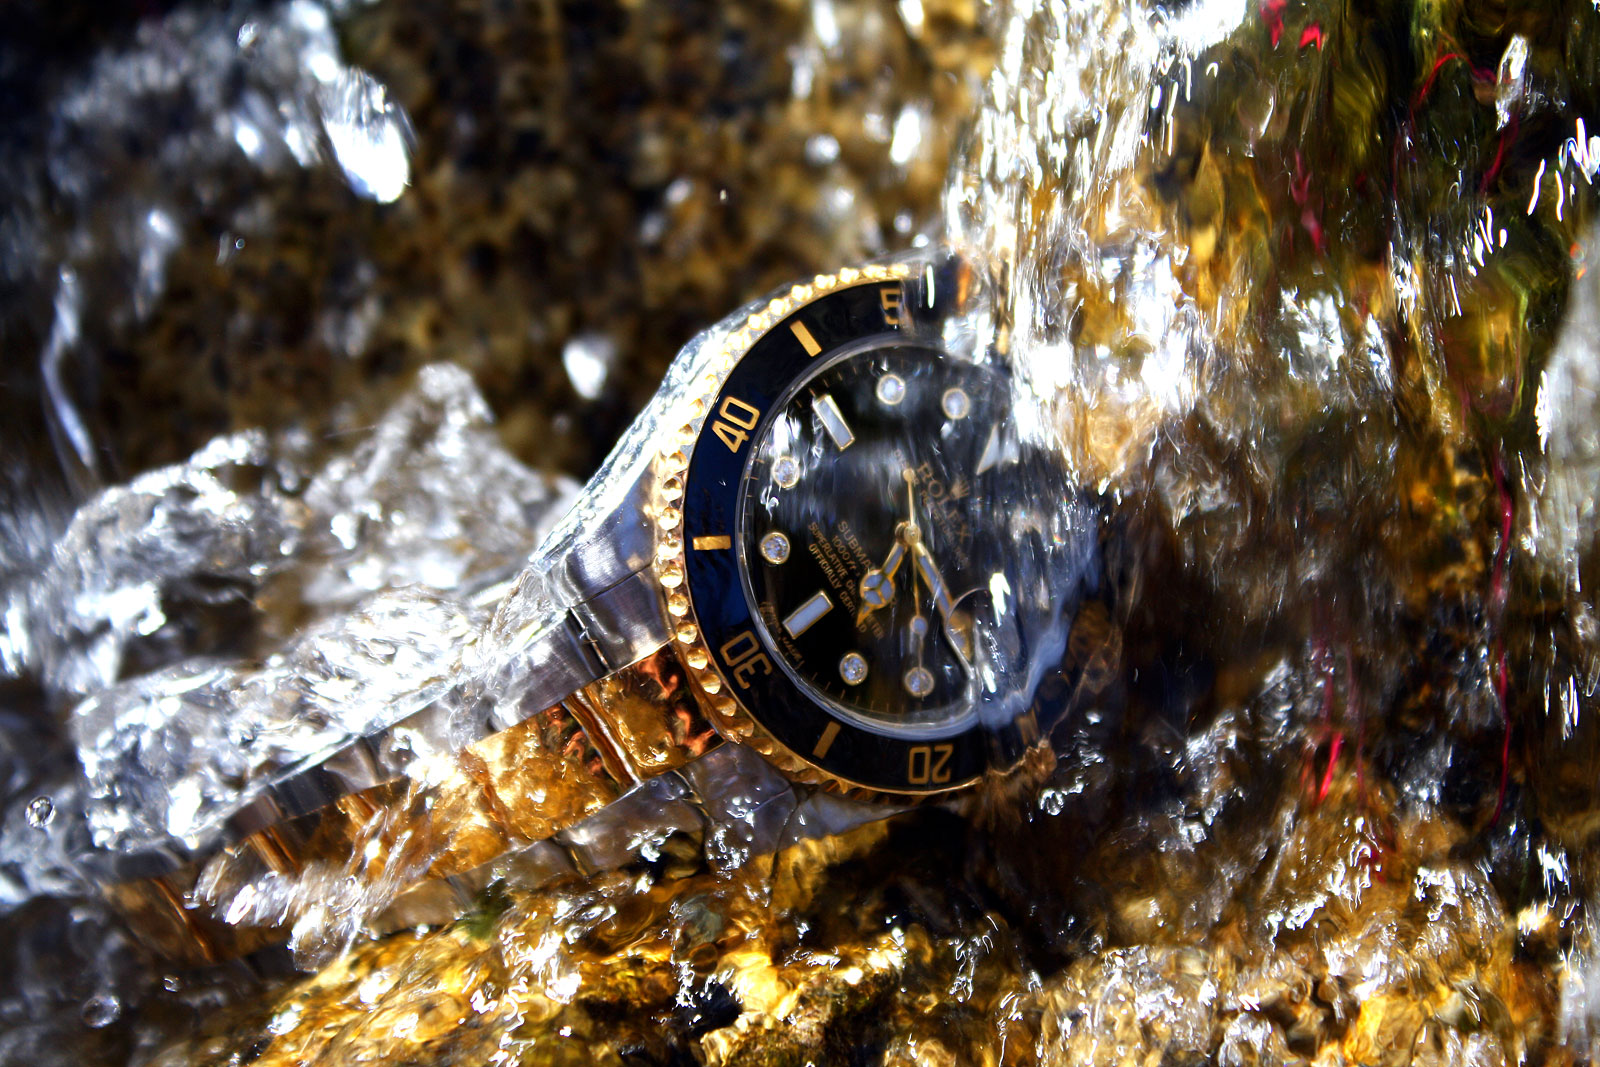 Rolex Underwater Shot Of The Day